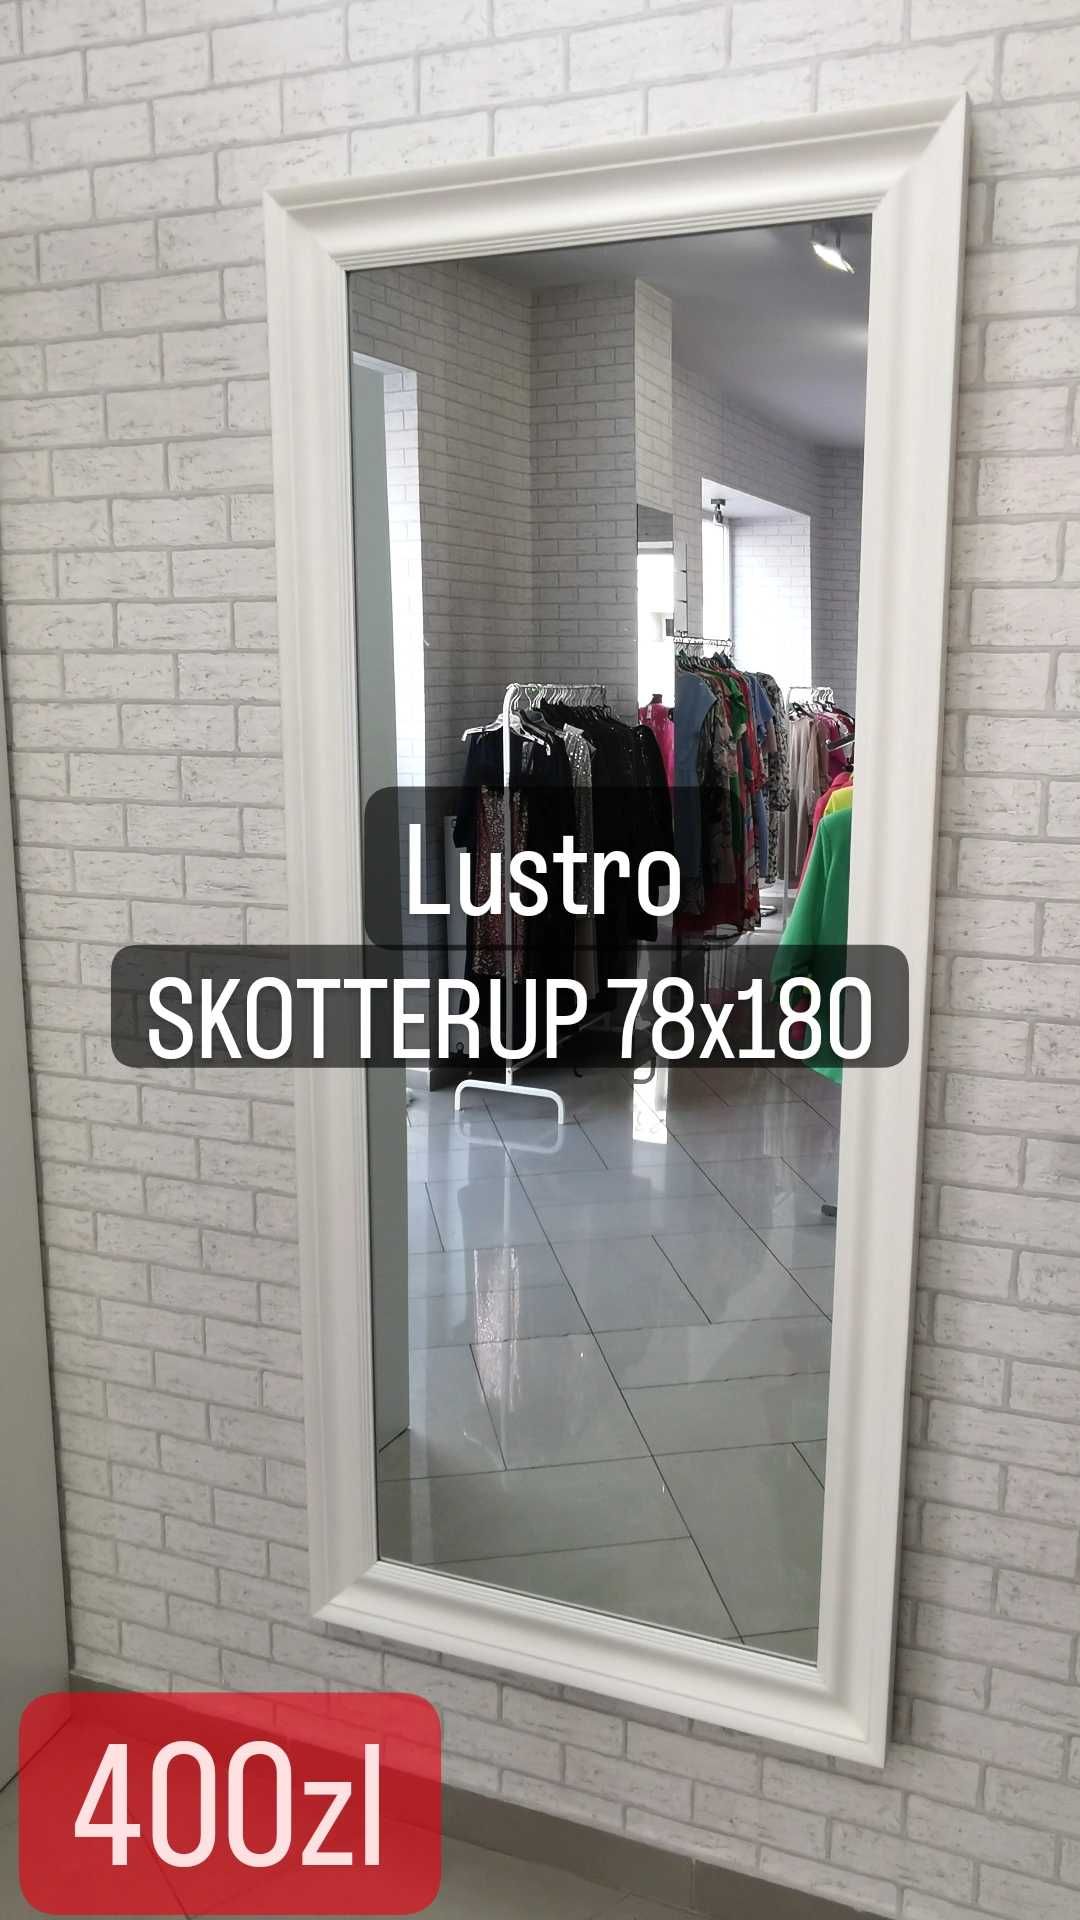 Lustro Jysk SKOTTERUP 78x180